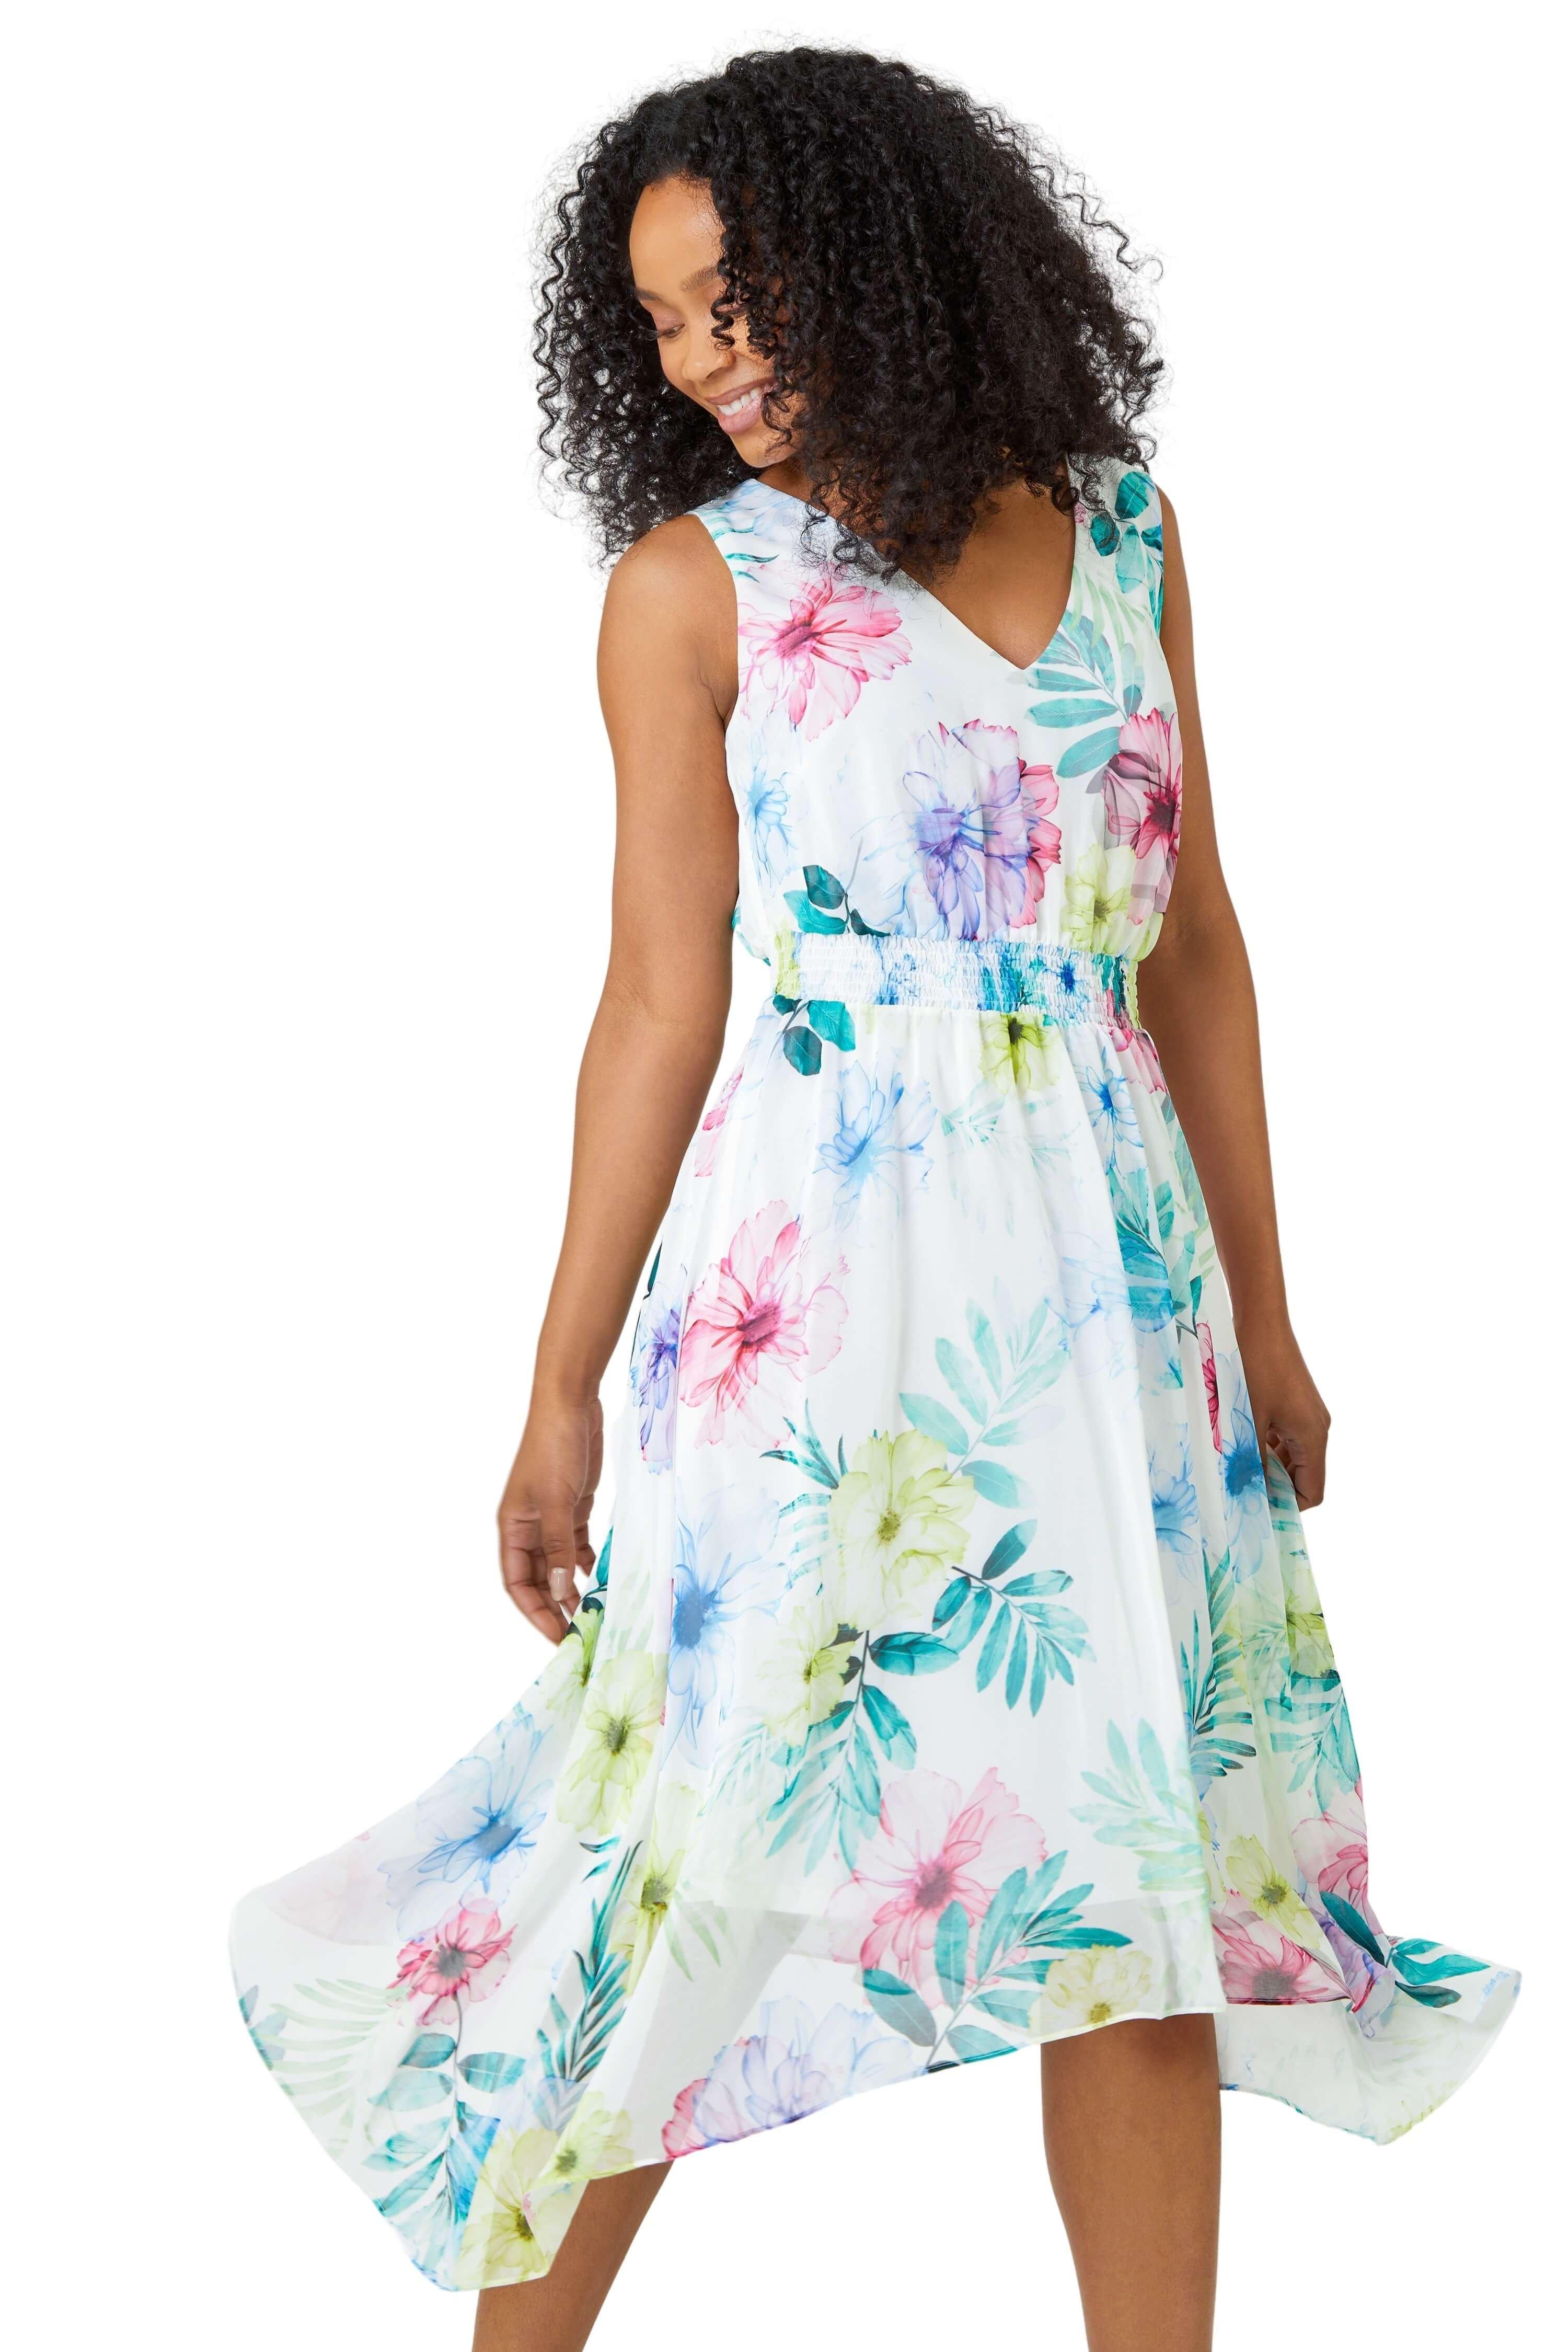 Миниатюрное гофрированное платье с цветочным принтом Roman, белый сиреневое короткое платье без бретелек из шифона с цветочным принтом lola may